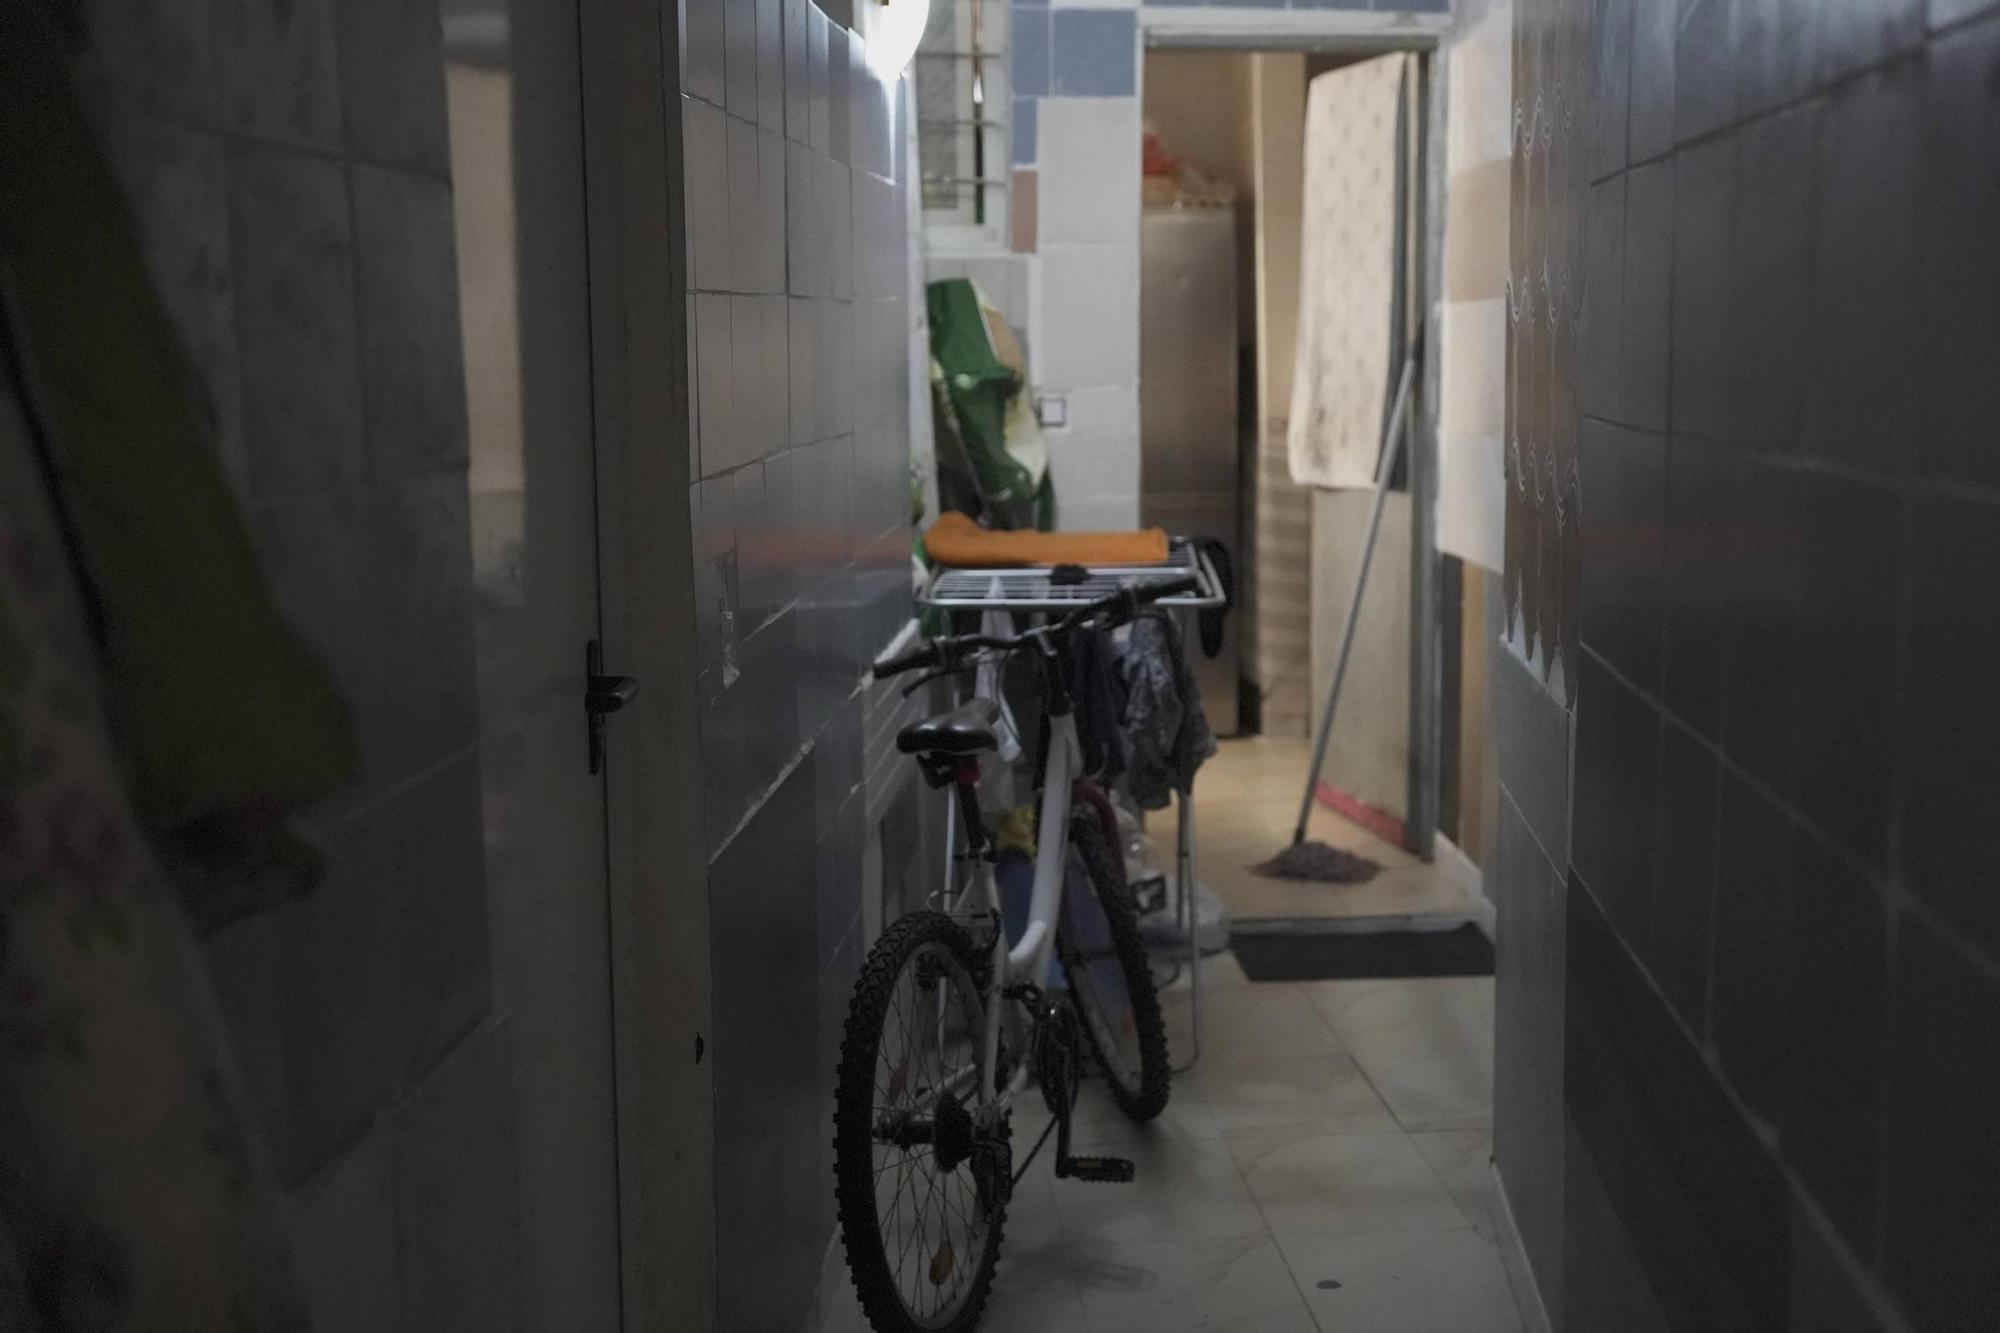 FOTOS | Estas son las habitaciones insalubres que alquilaba el policía local detenido en Palma